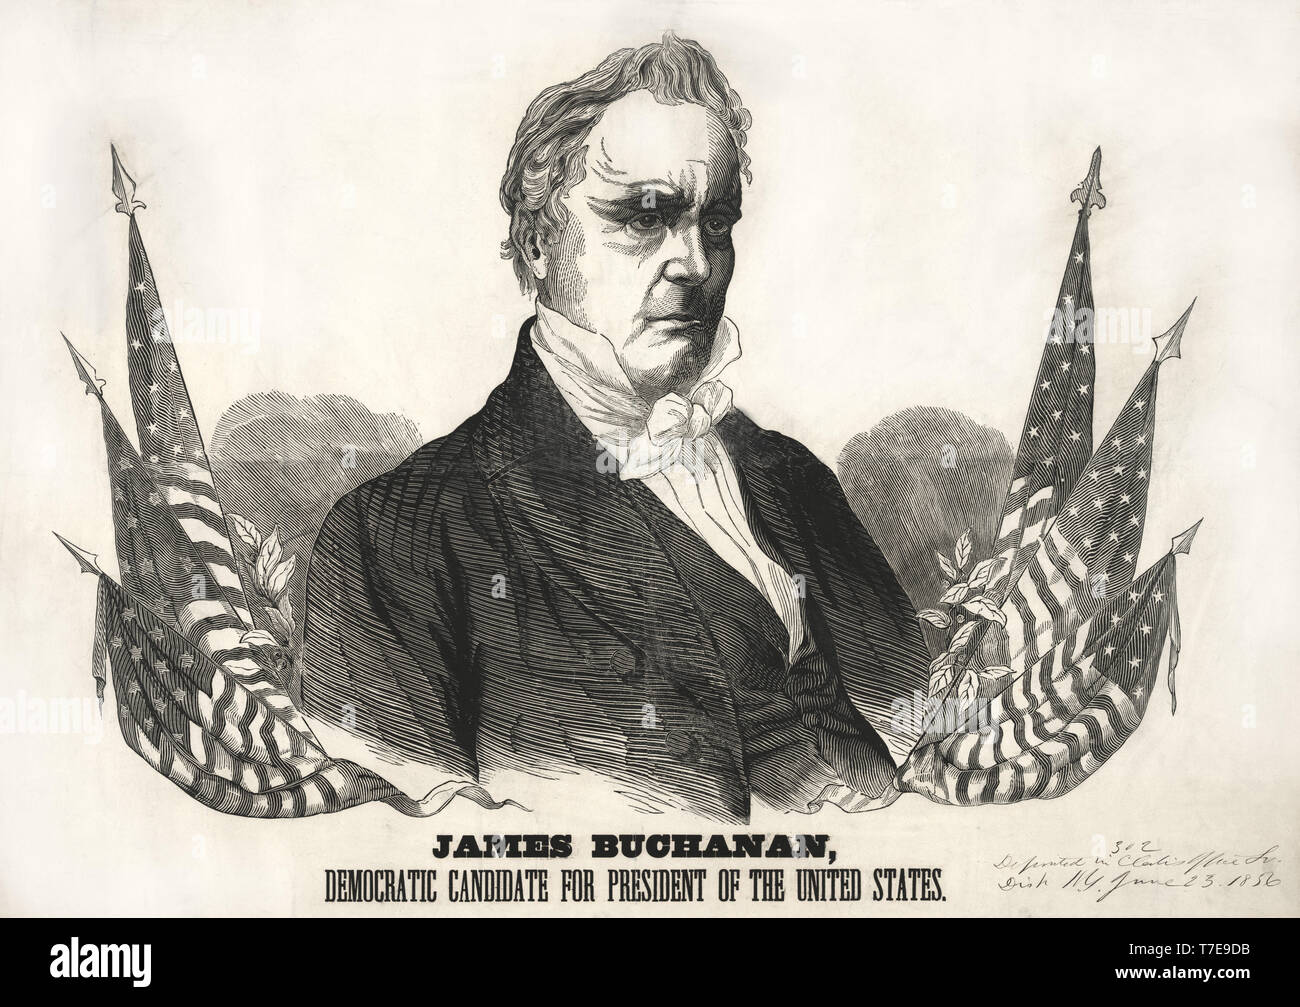 James Buchanan, der demokratische Kandidat für das Amt des Präsidenten der Vereinigten Staaten, ein Beweis für die Kampagne Banner, durch Baker & Godwin, 1856 veröffentlicht. Stockfoto